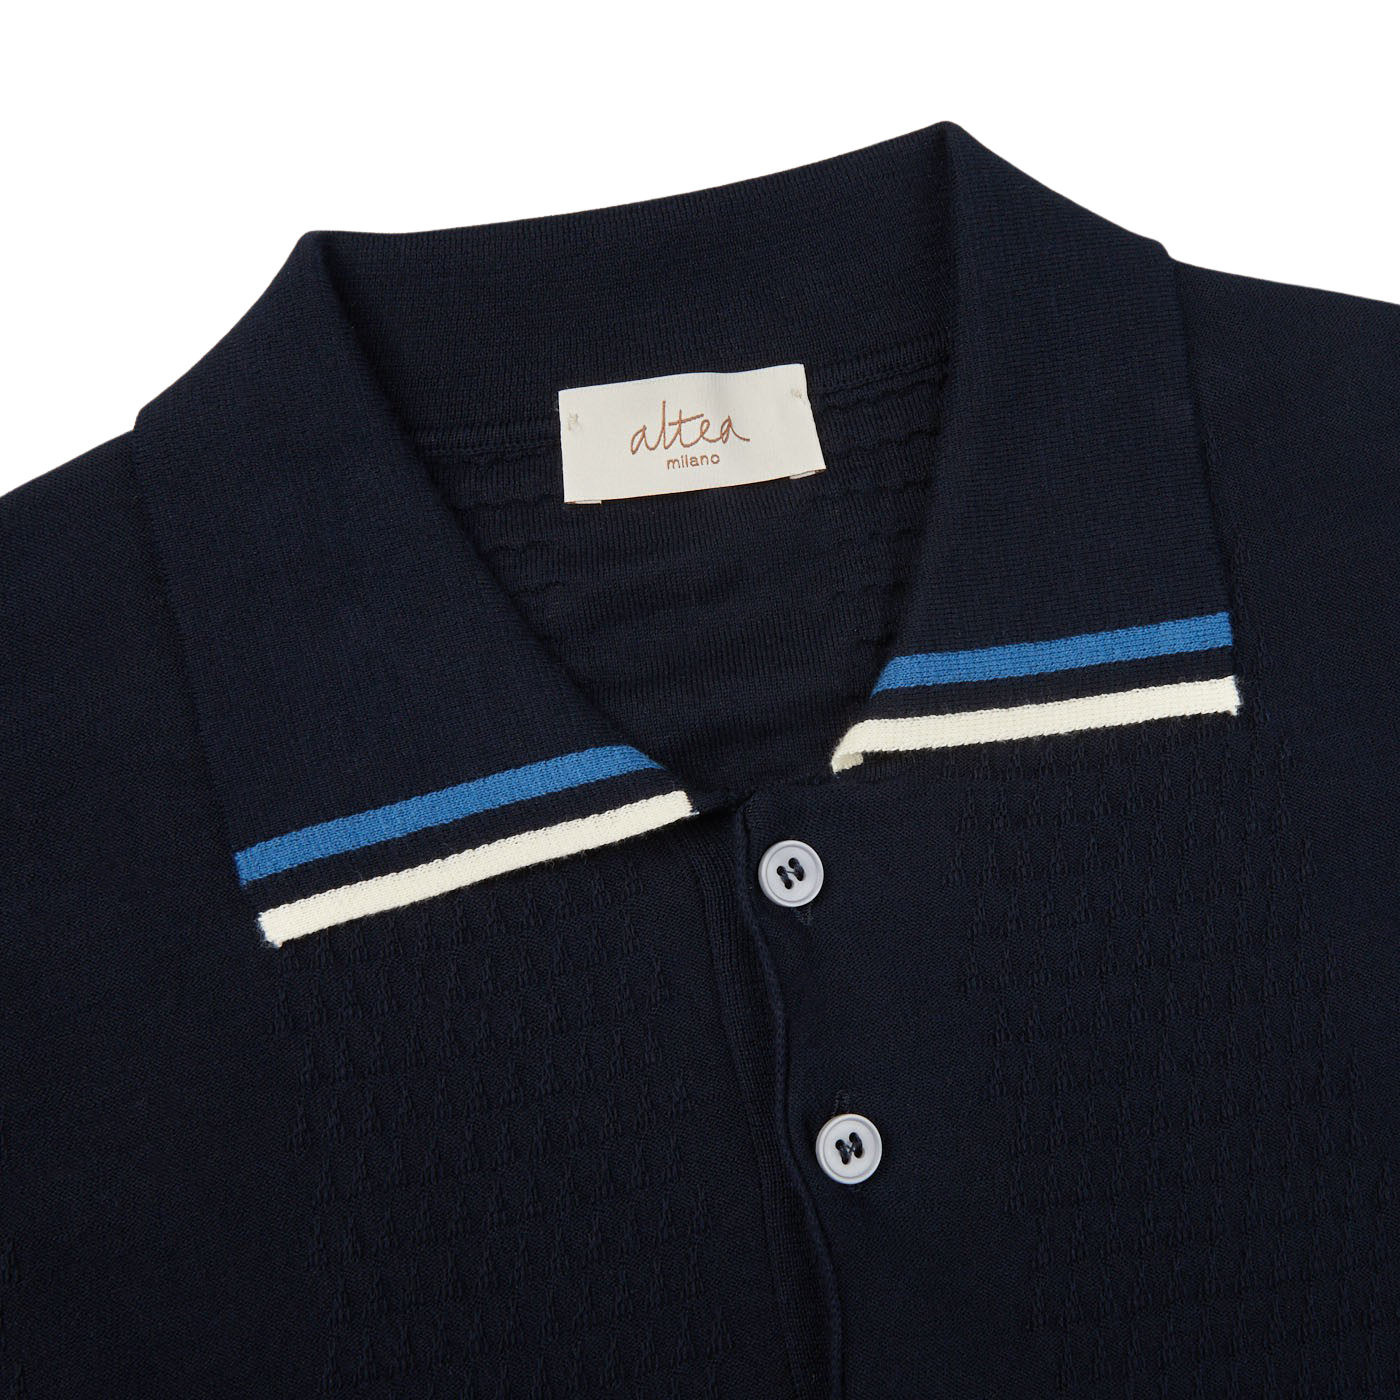 Altea Navy Blue Cotton Tipped Polo Shirt Collar